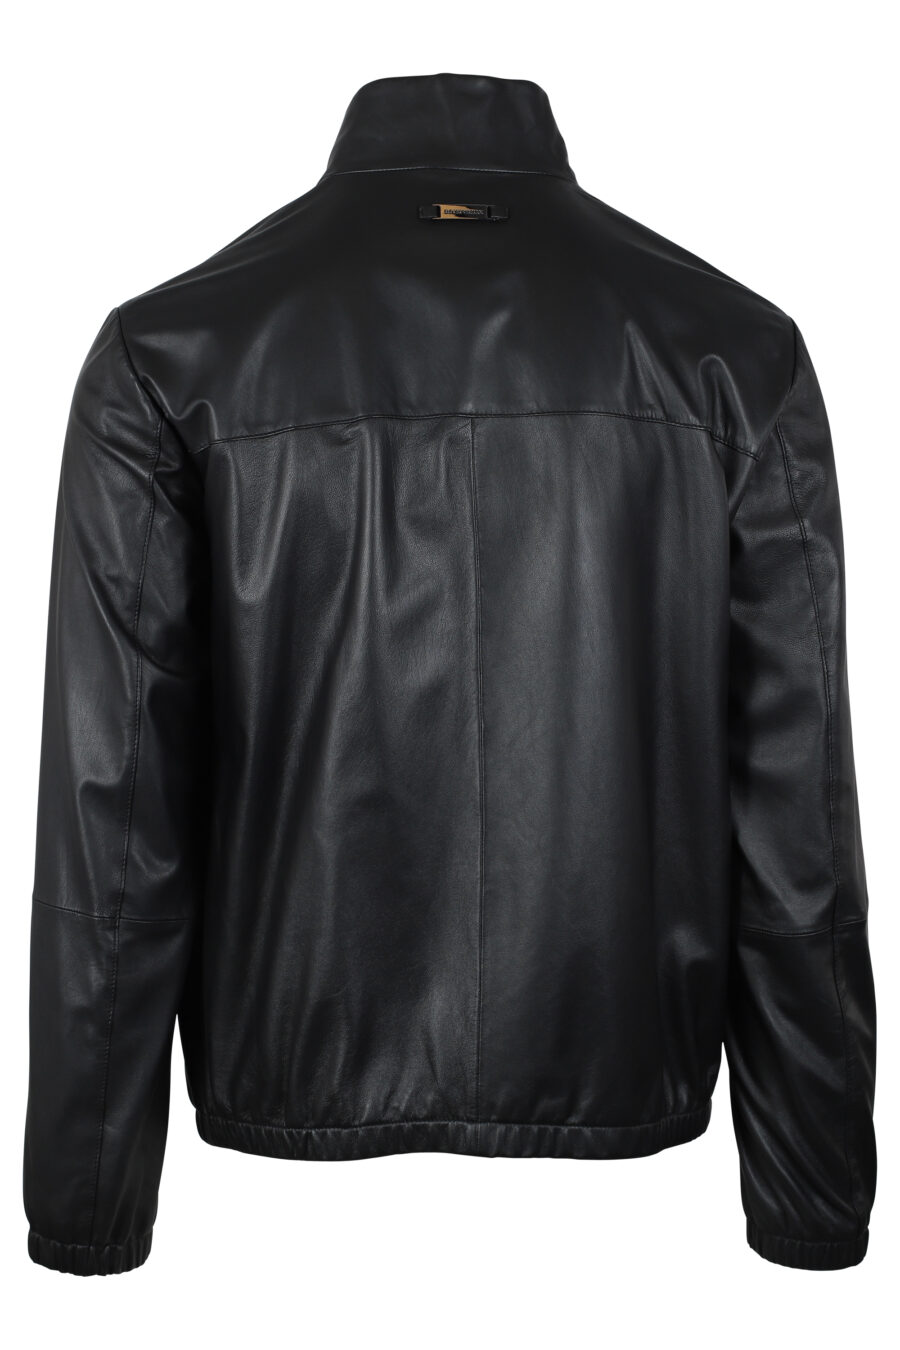 Black leather jacket with mini-logo - IMG 4657